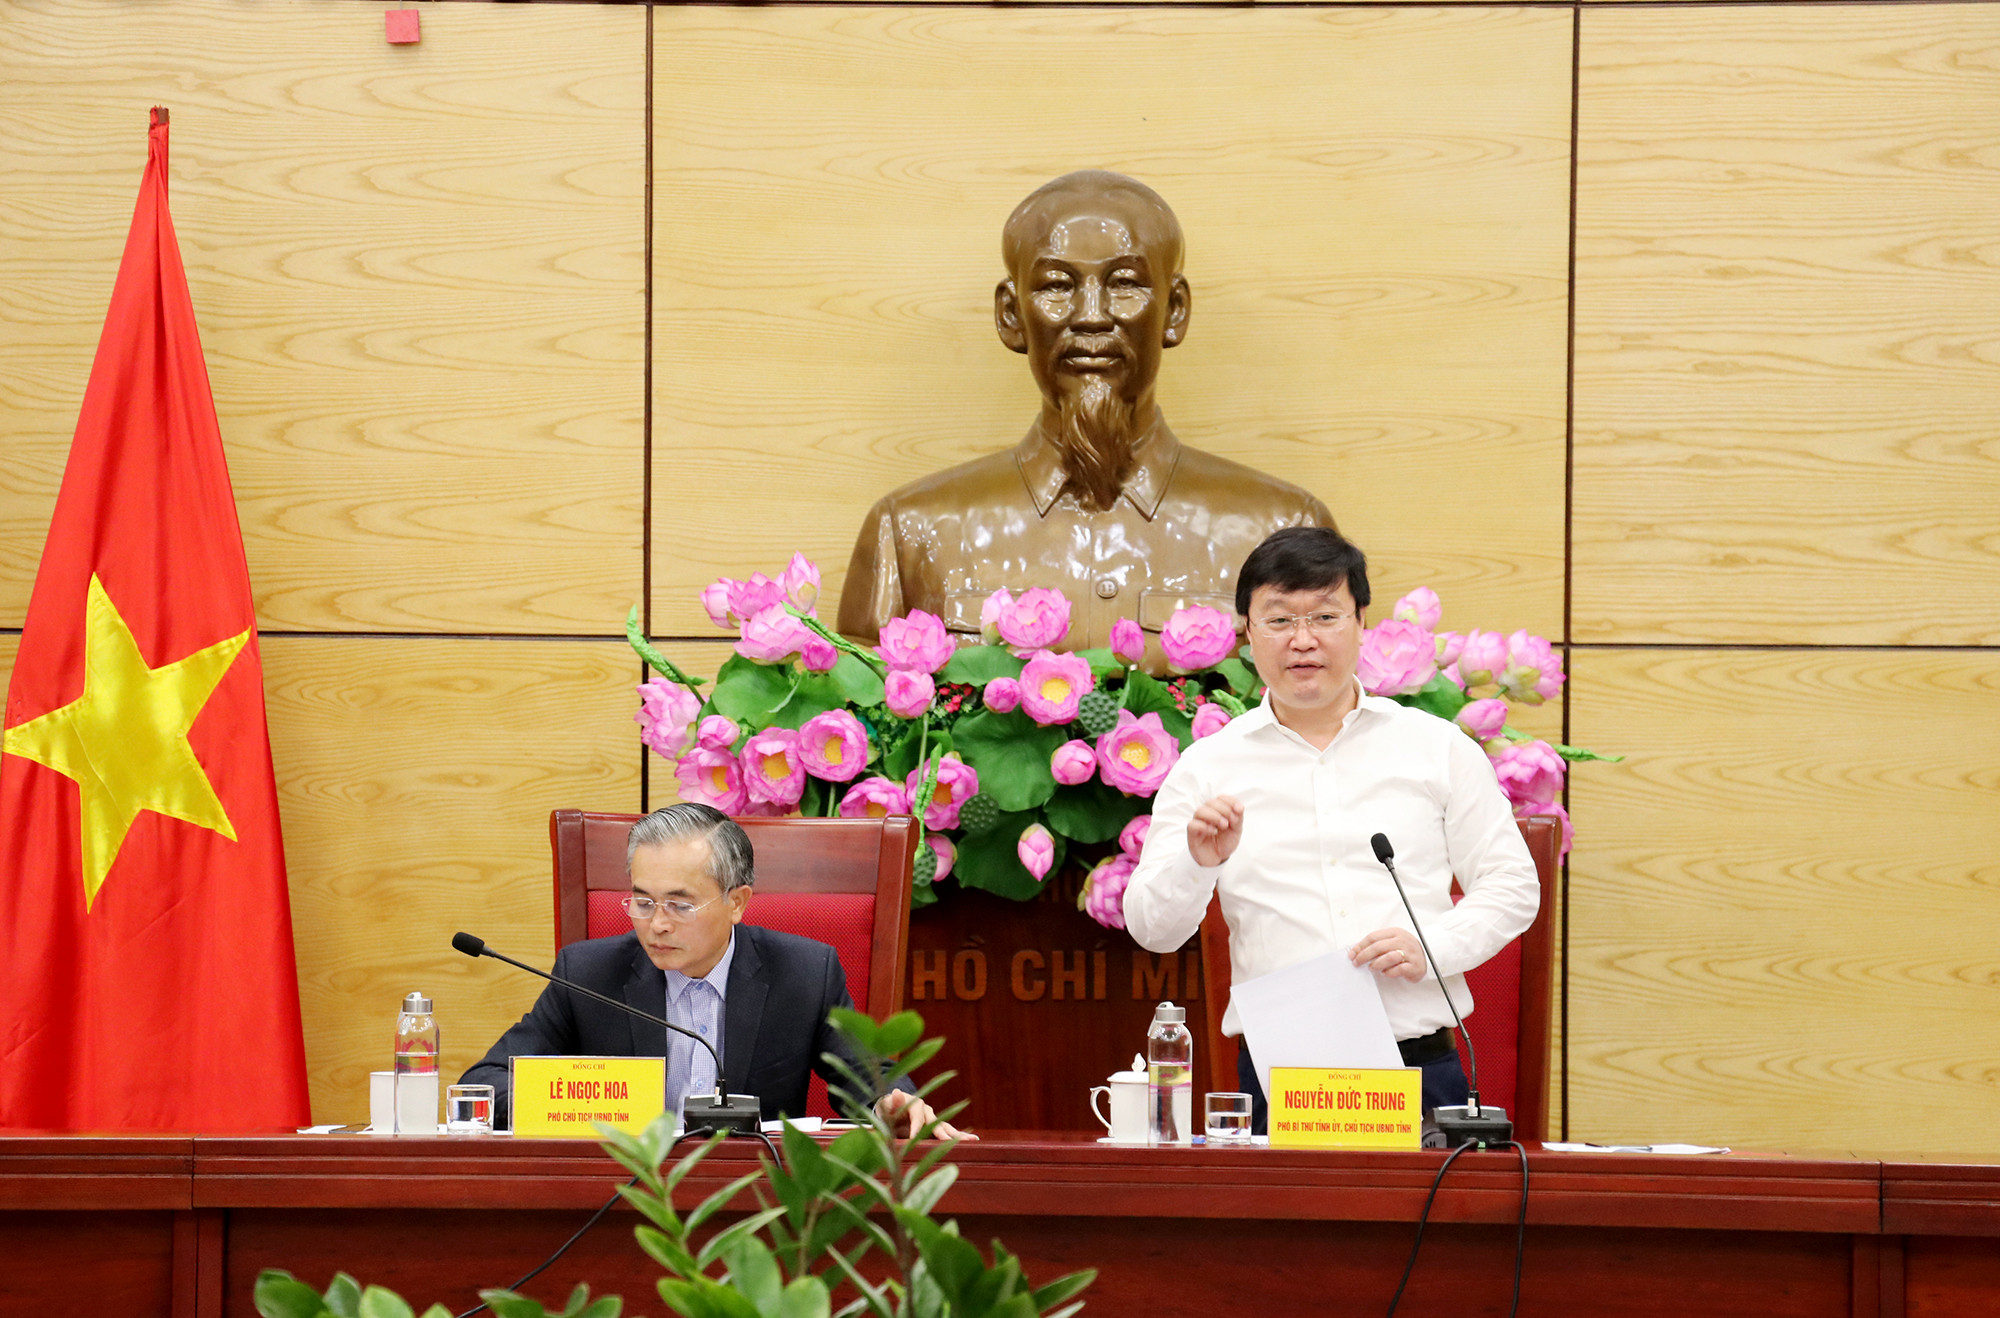 Đồng chí Nguyễn Đức Trung - Chủ tịch UBND tỉnh phát biểu ý kiến chỉ đạo tại hội nghị giao ban. Ảnh: Phạm Bằng